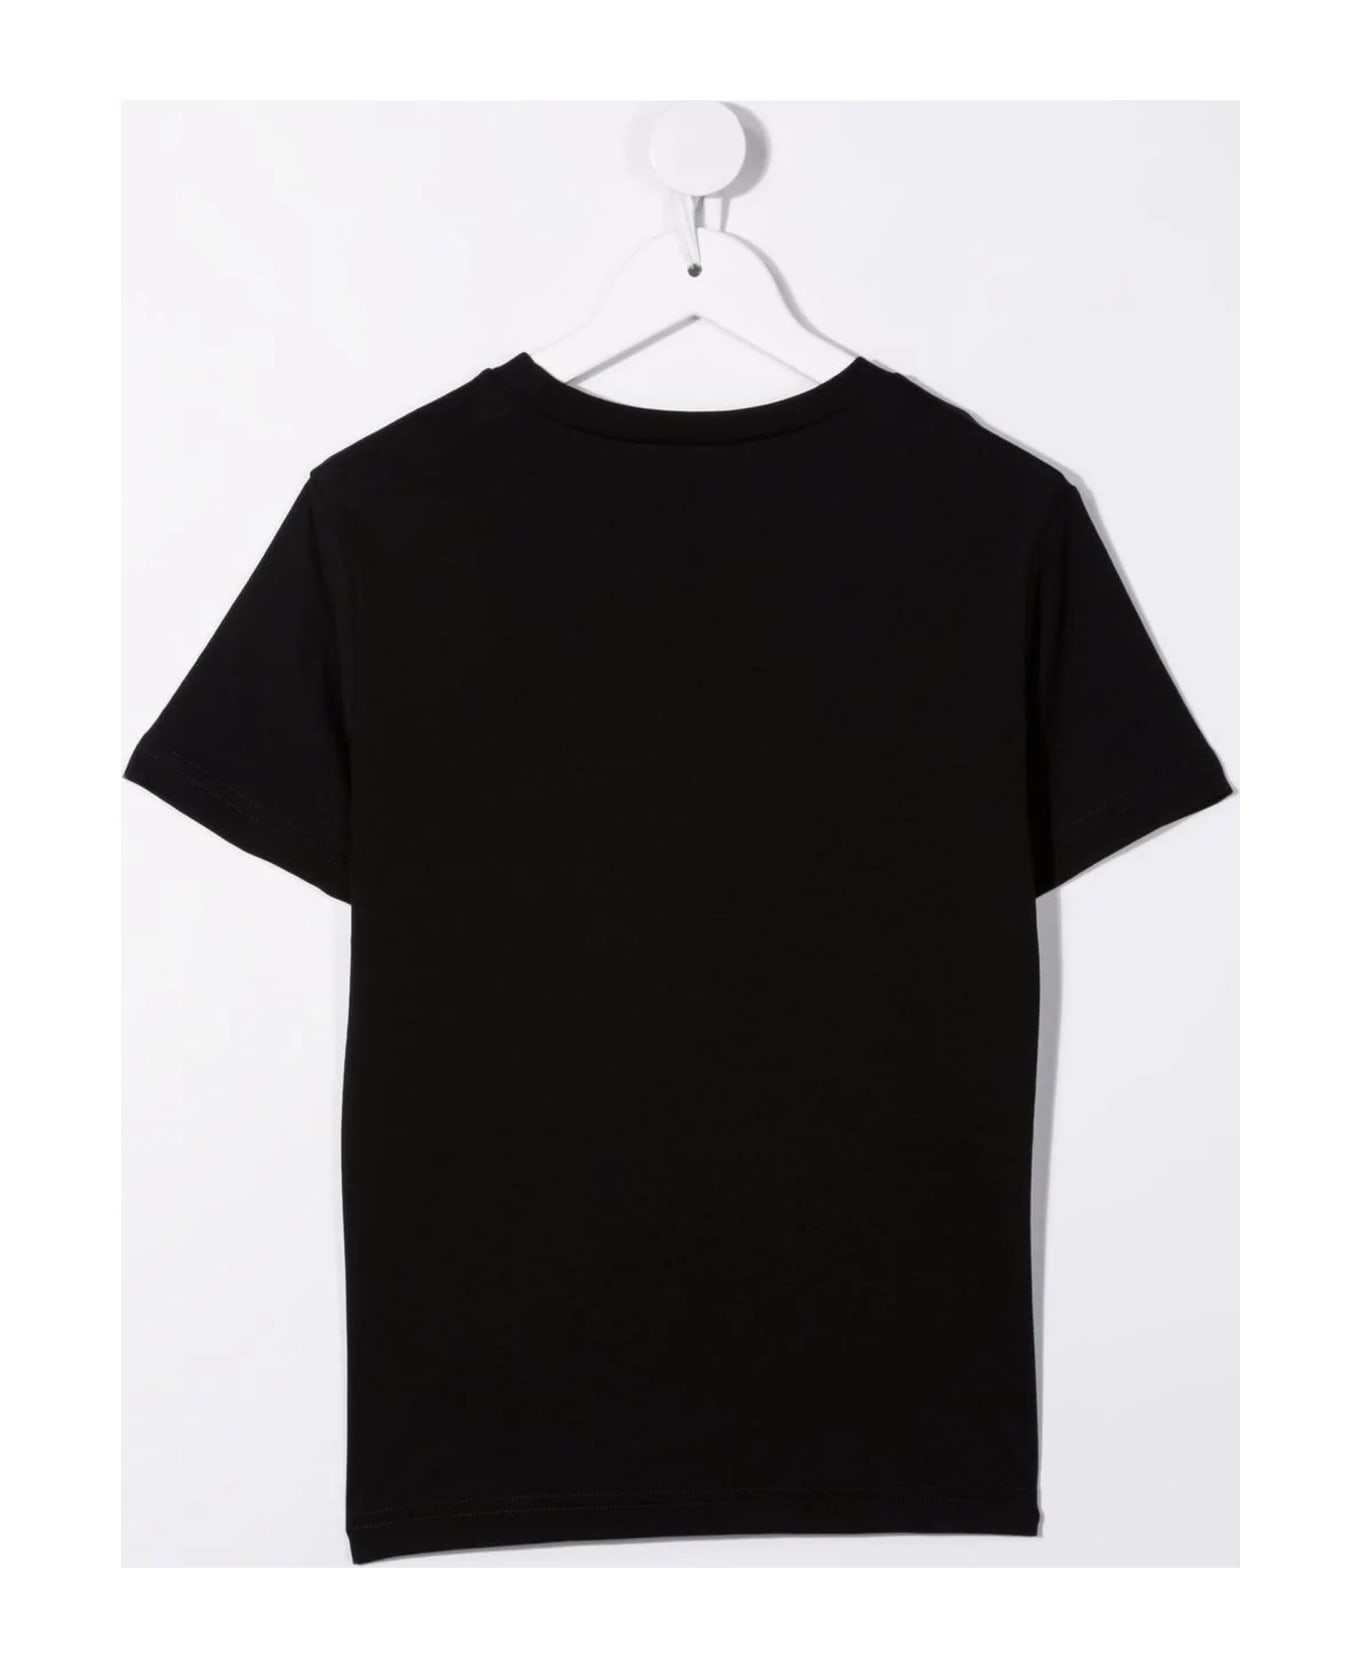 N.21 N°21 T-shirts And Polos Black - Black